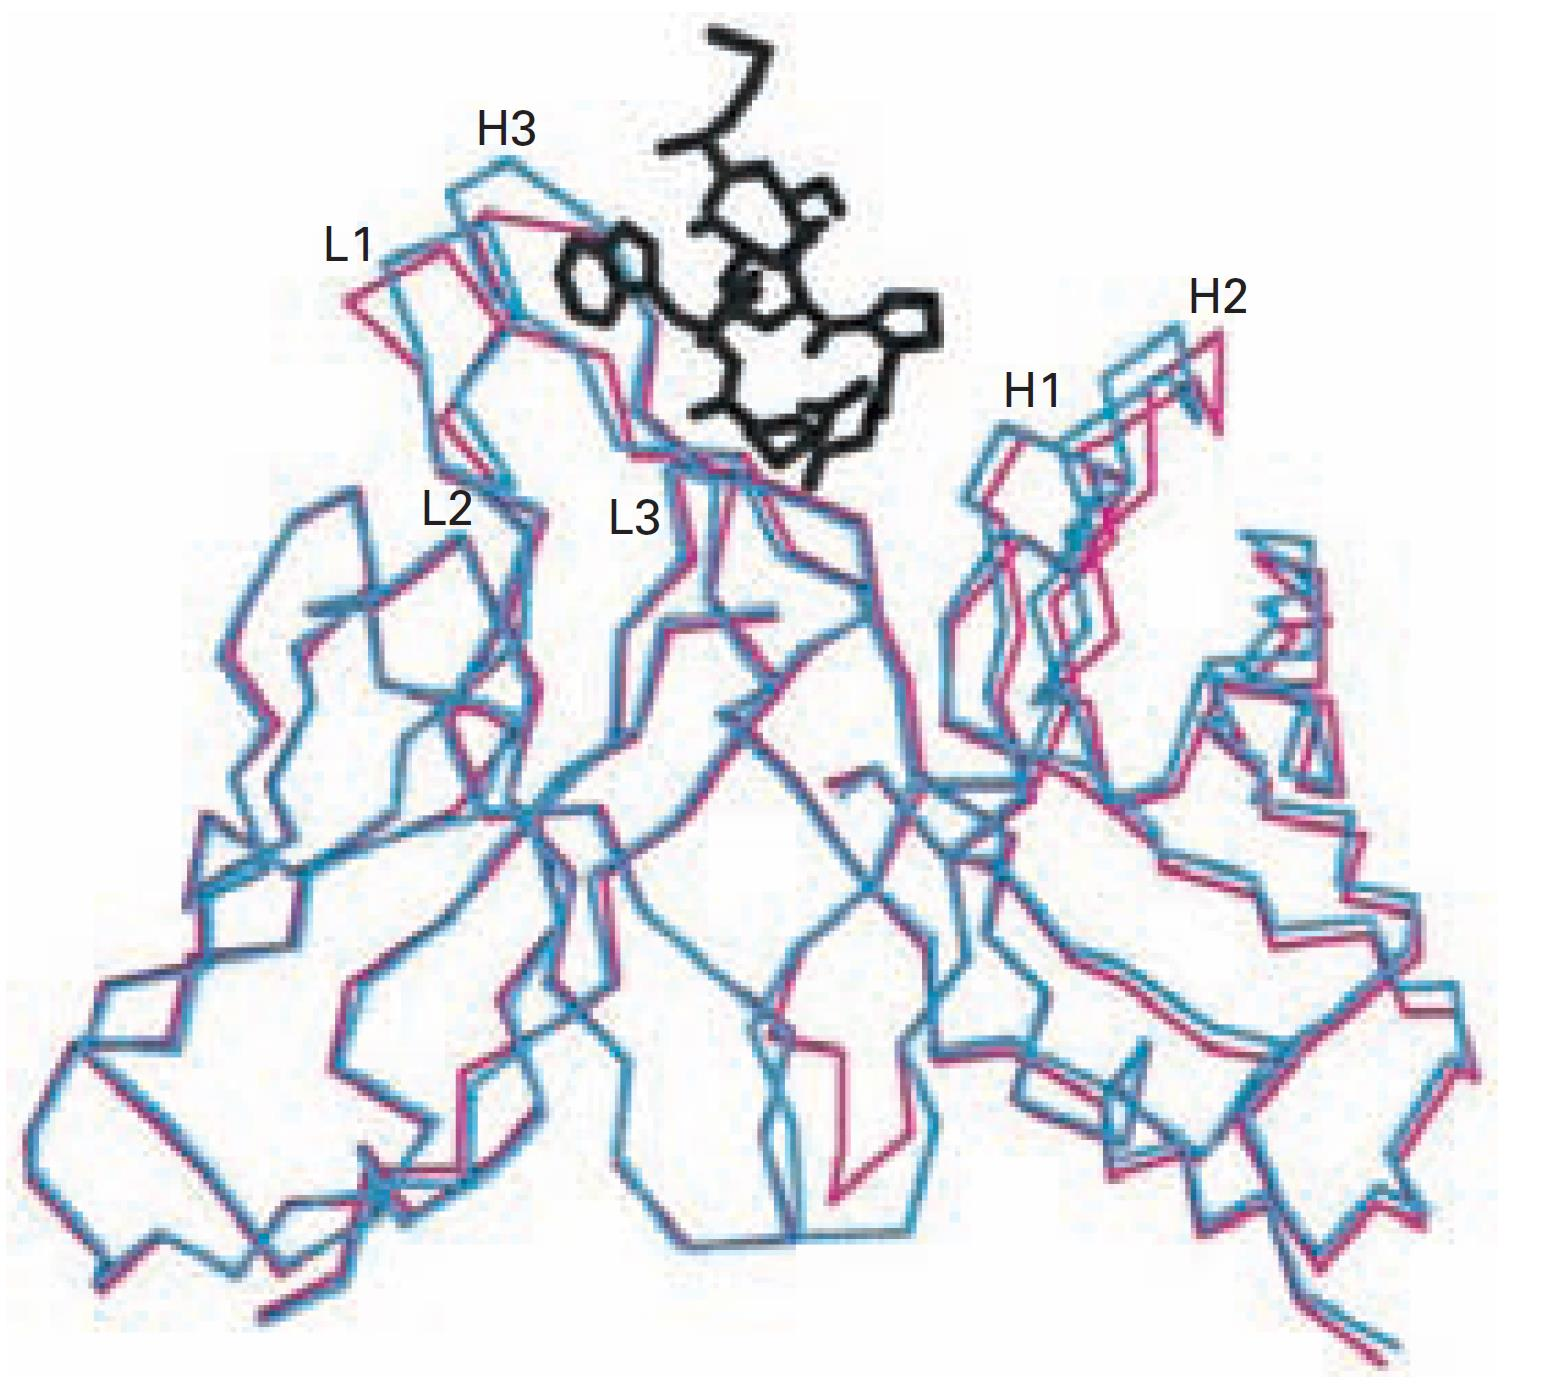 CDR Cadena Pesada H1, H2, H3 Cadena Liviana L1, L2, L3 Cambio conformacional al unirse el antígeno